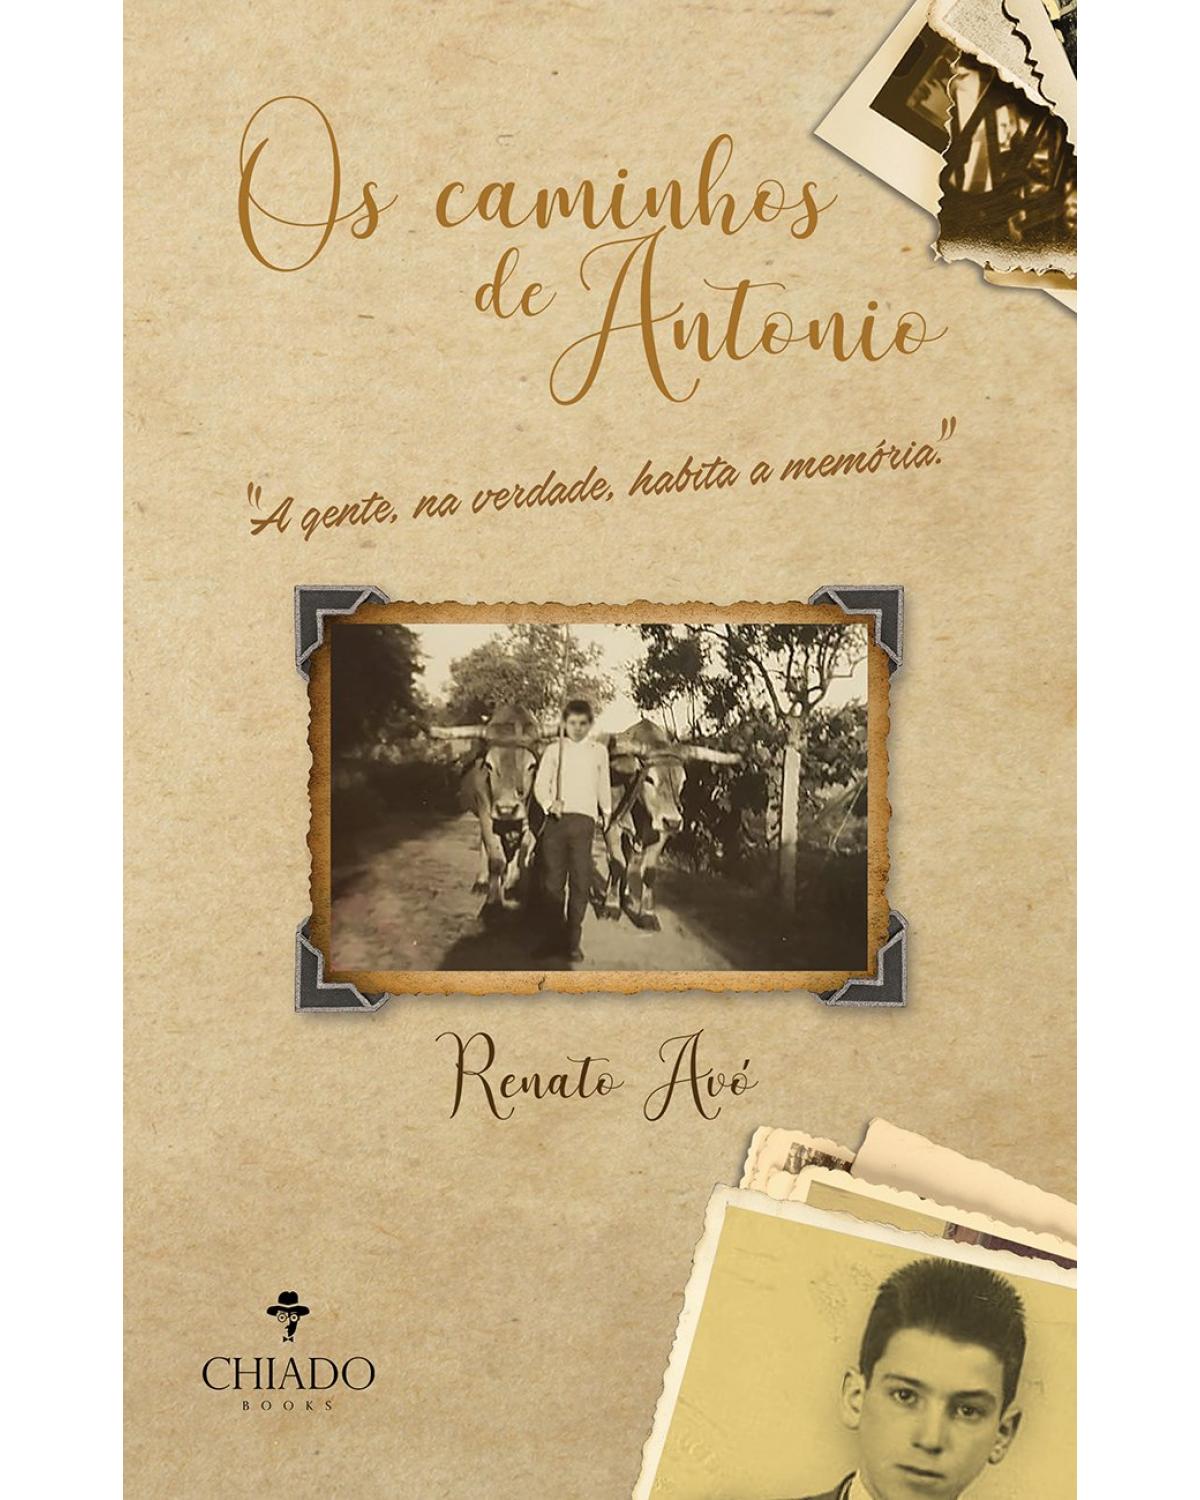 Os caminhos de Antonio - a vida de imigrante no Brasil, de quem nunca saiu de Portugal - 1ª Edição | 2021